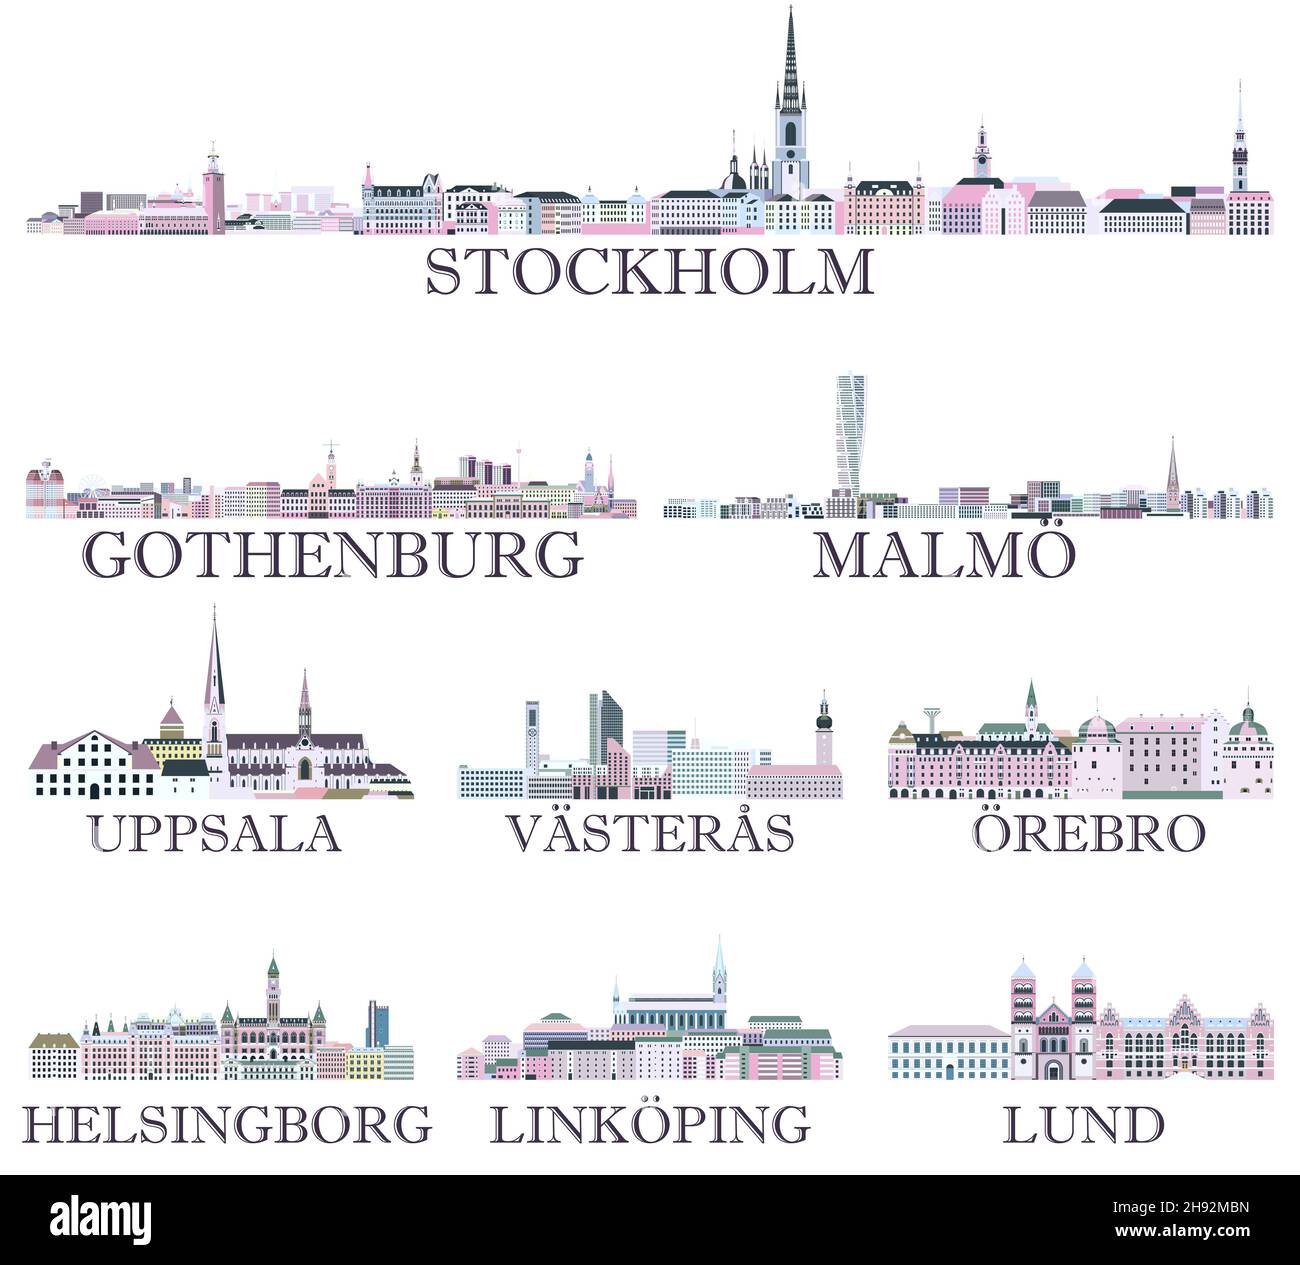 Le città svedesi si abbelliscono in una ricca tavolozza di colori pastello e vivaci. Stile estetico magico Illustrazione Vettoriale